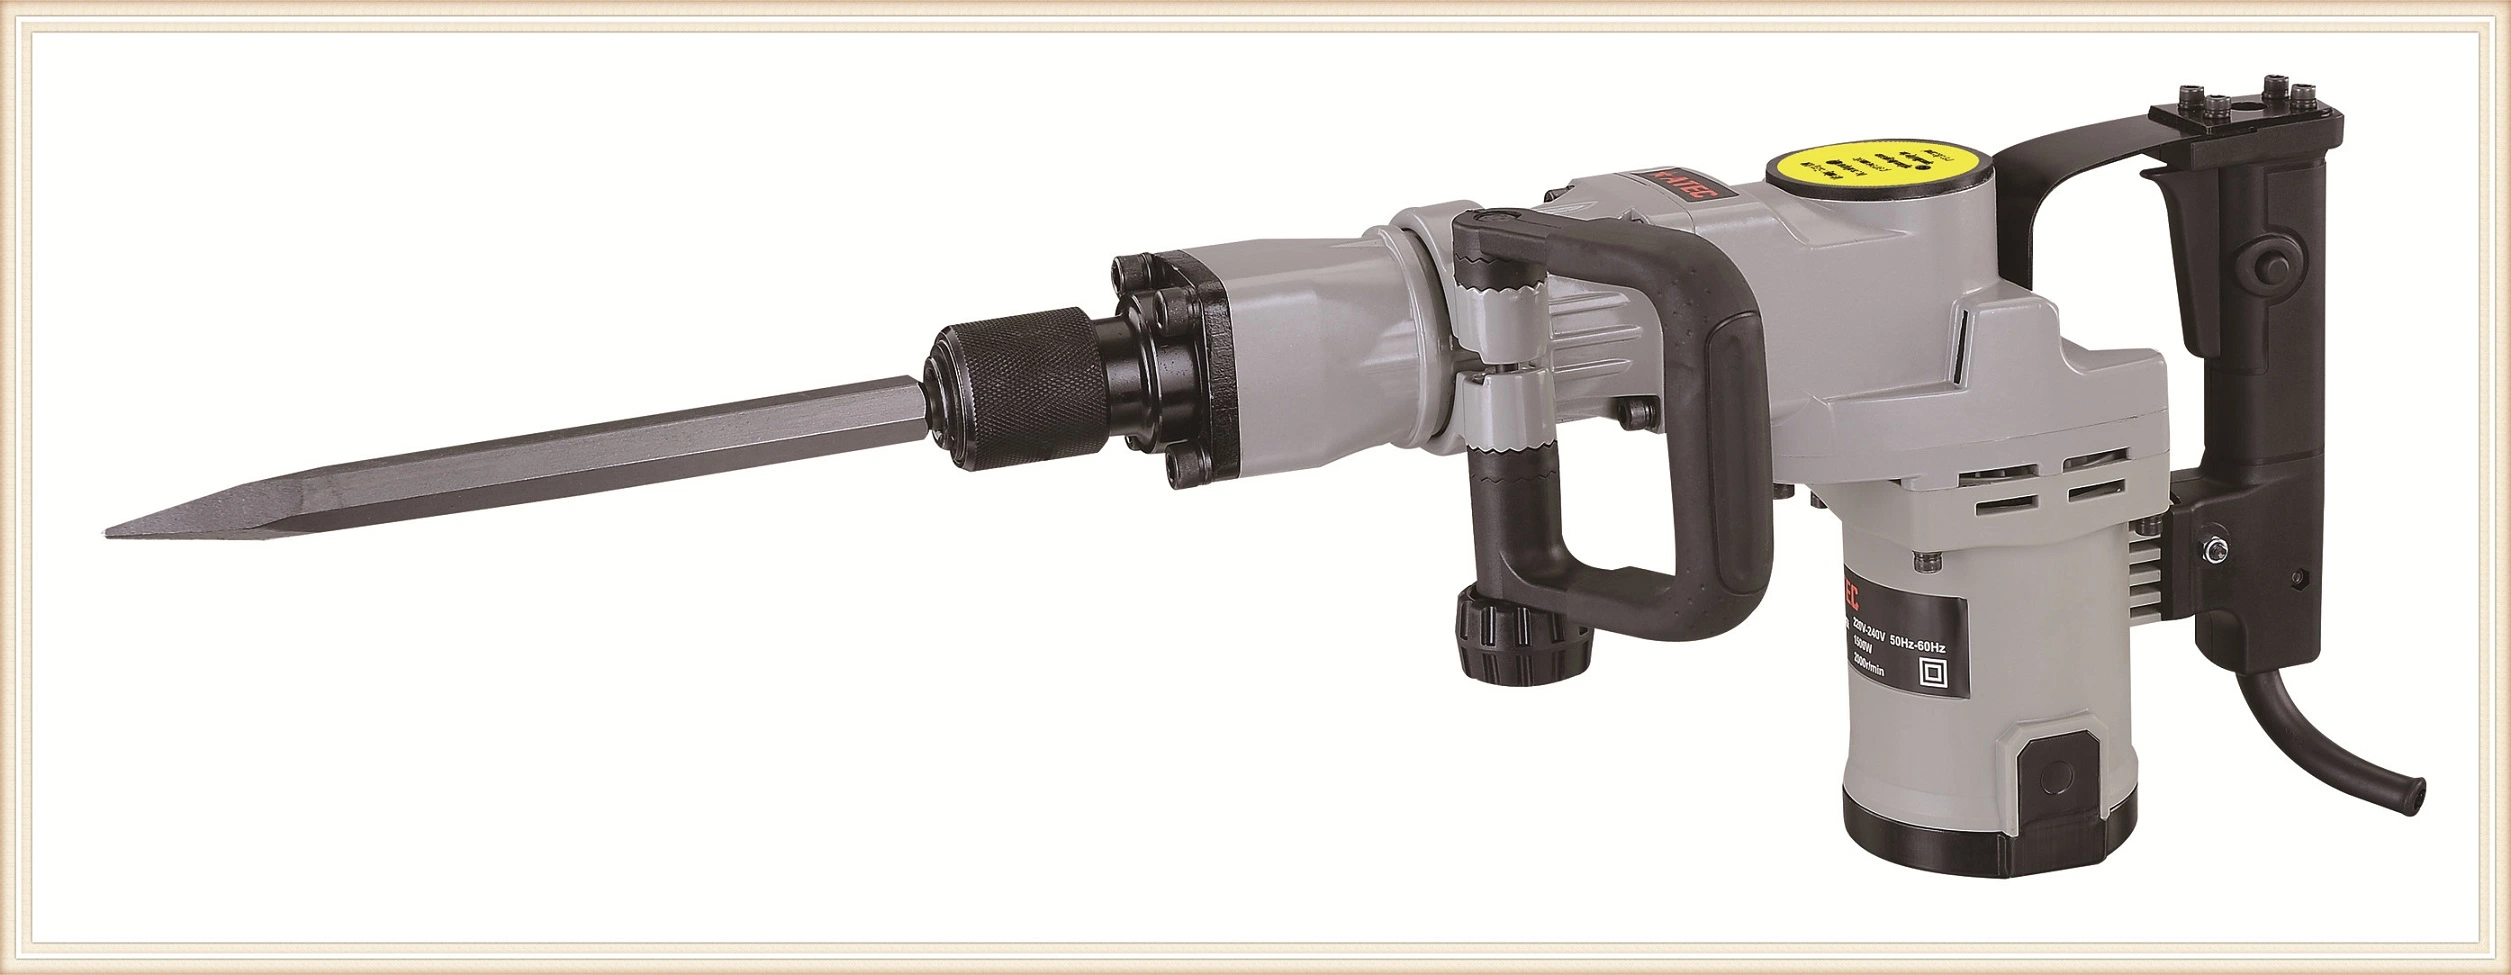 1500W de potencia de la industria de herramientas con la demolición de martillo rompedor (A9250)